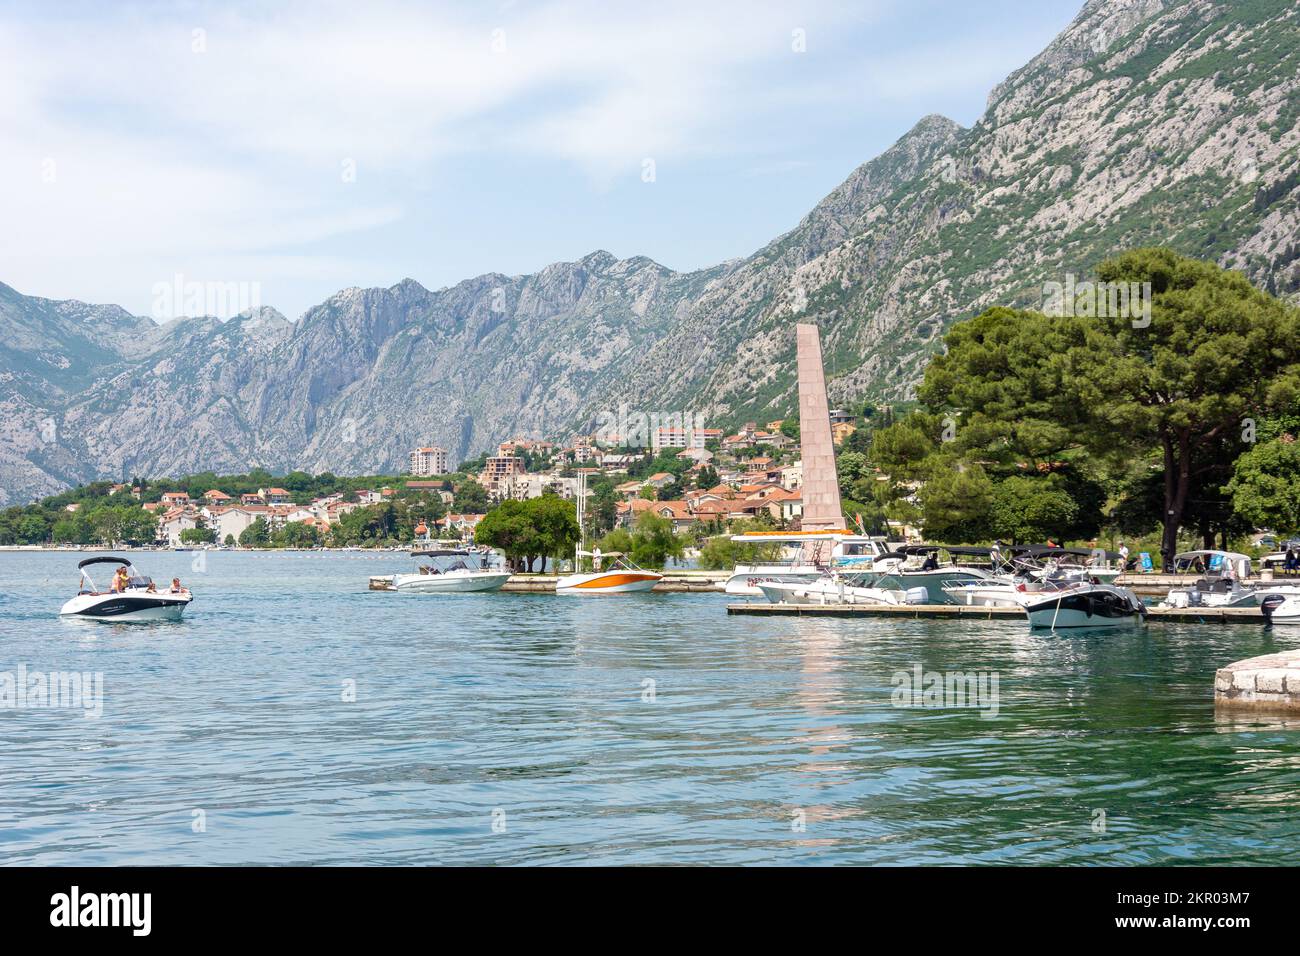 Harbour scene, Bay of Kotor (Boka kotorska), Kotor, Dalmatia, Montenegro Stock Photo